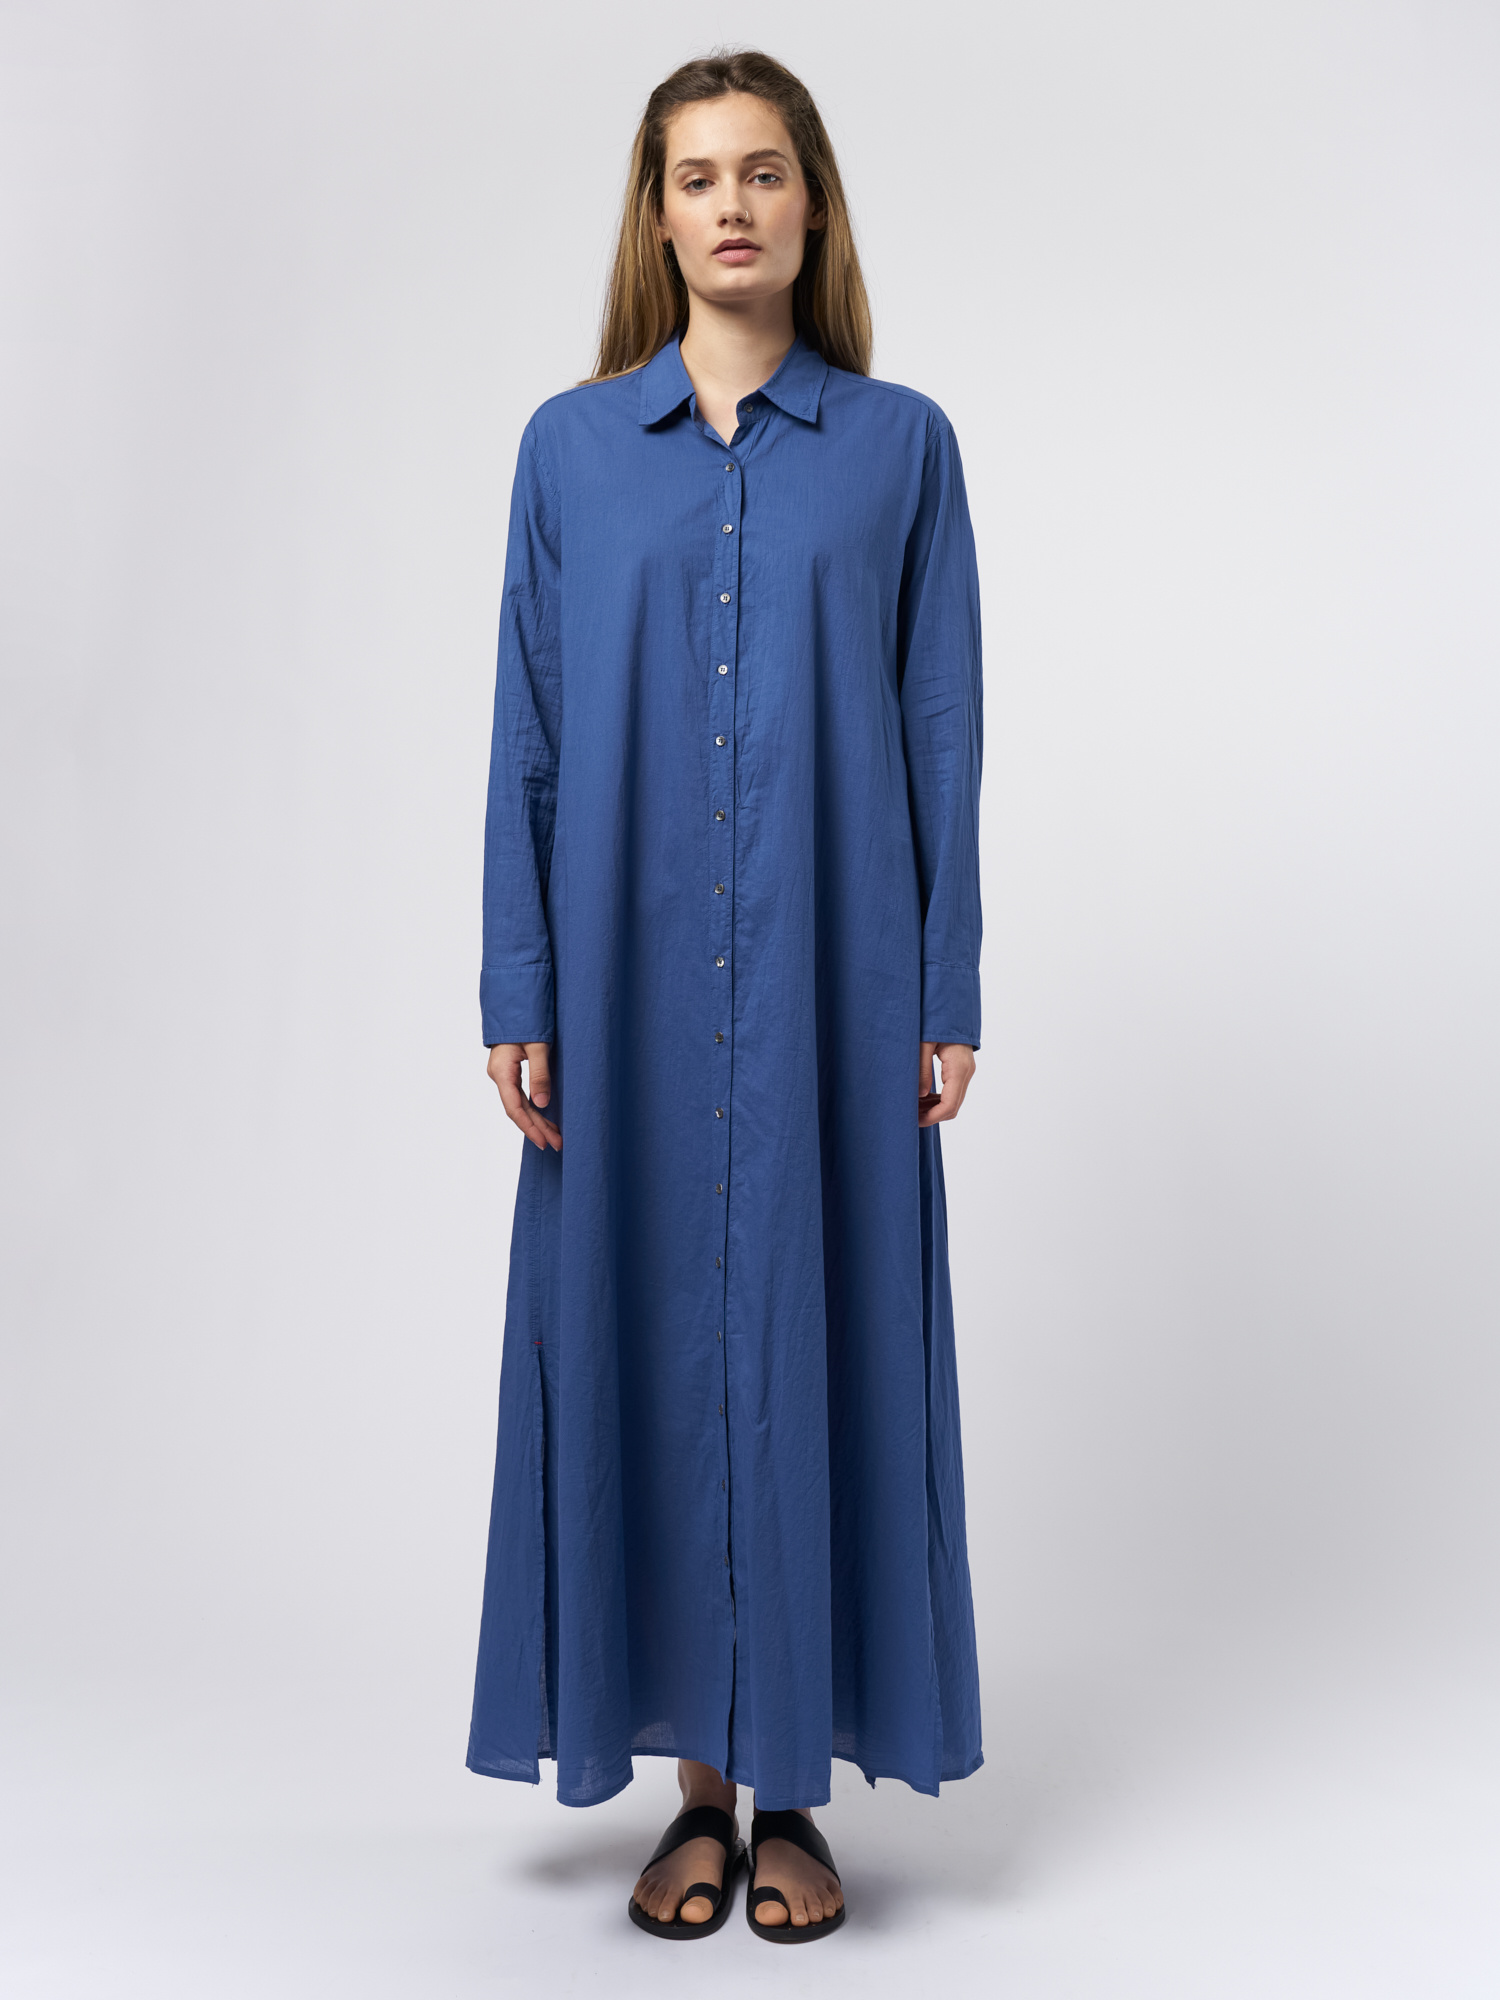 Boden Dress Blue Capri - Alhambra  Women's Clothing Boutique, Seattle